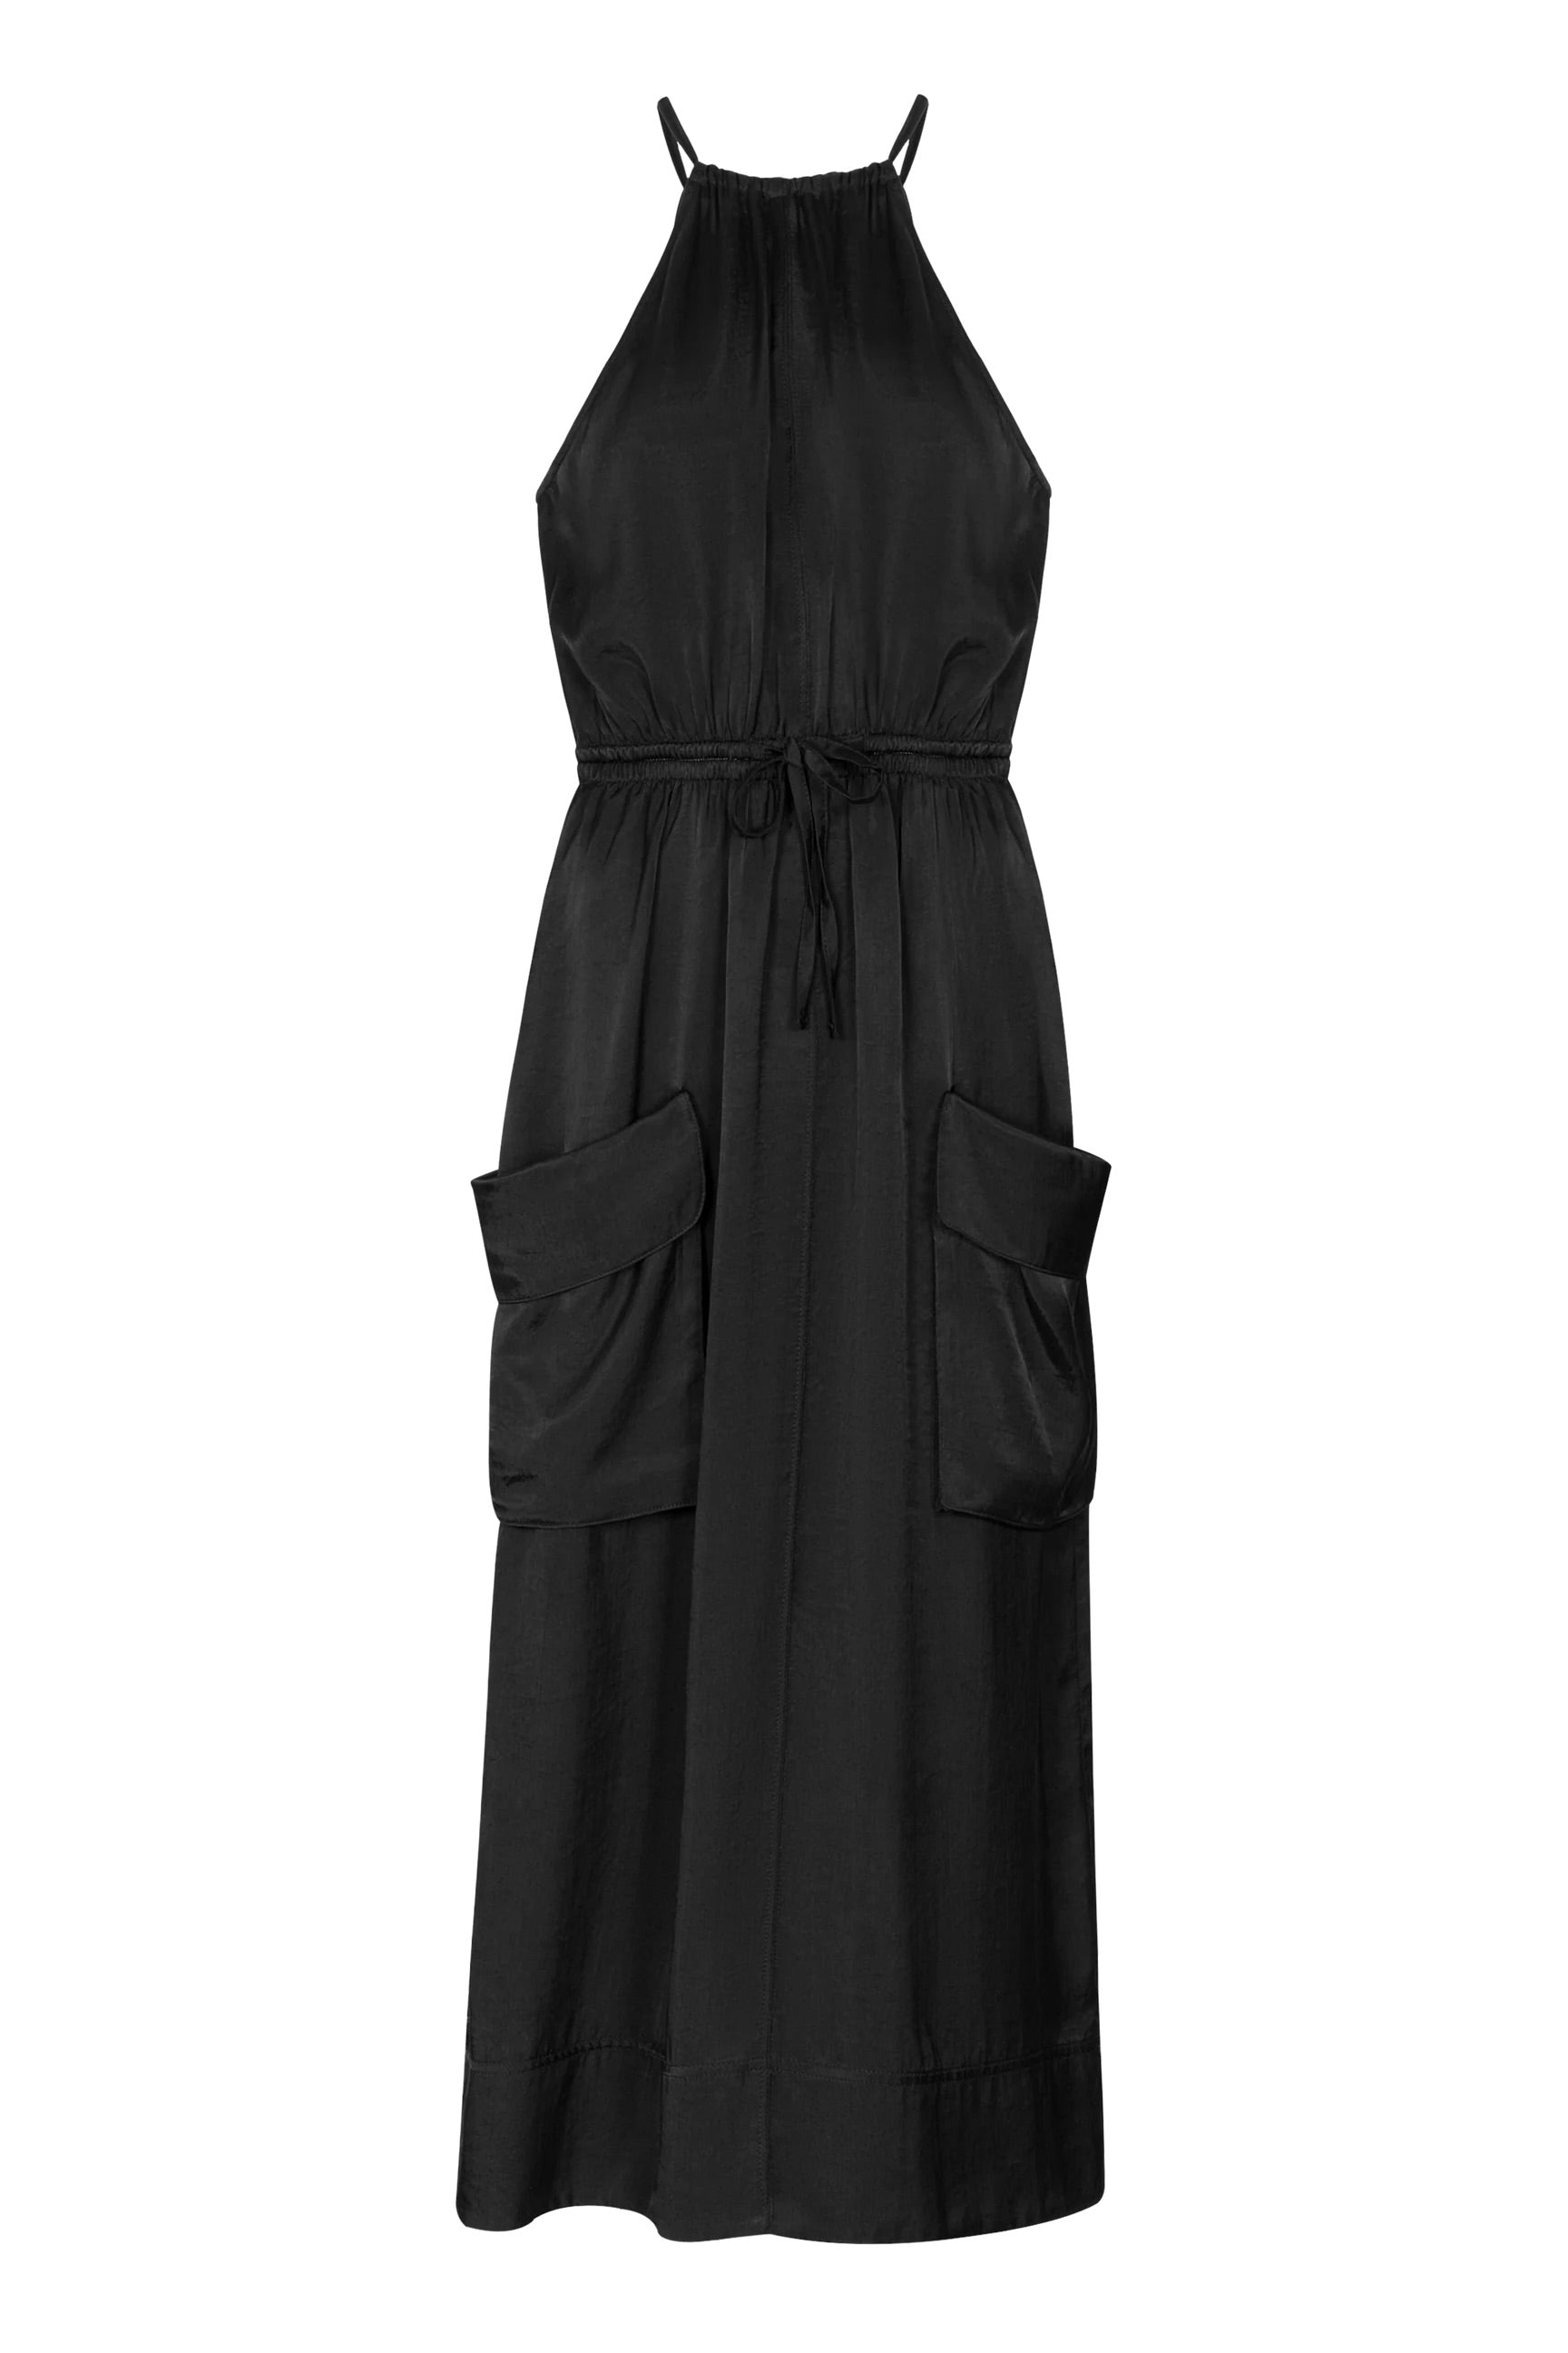 UIM Prospectus Dress / Black